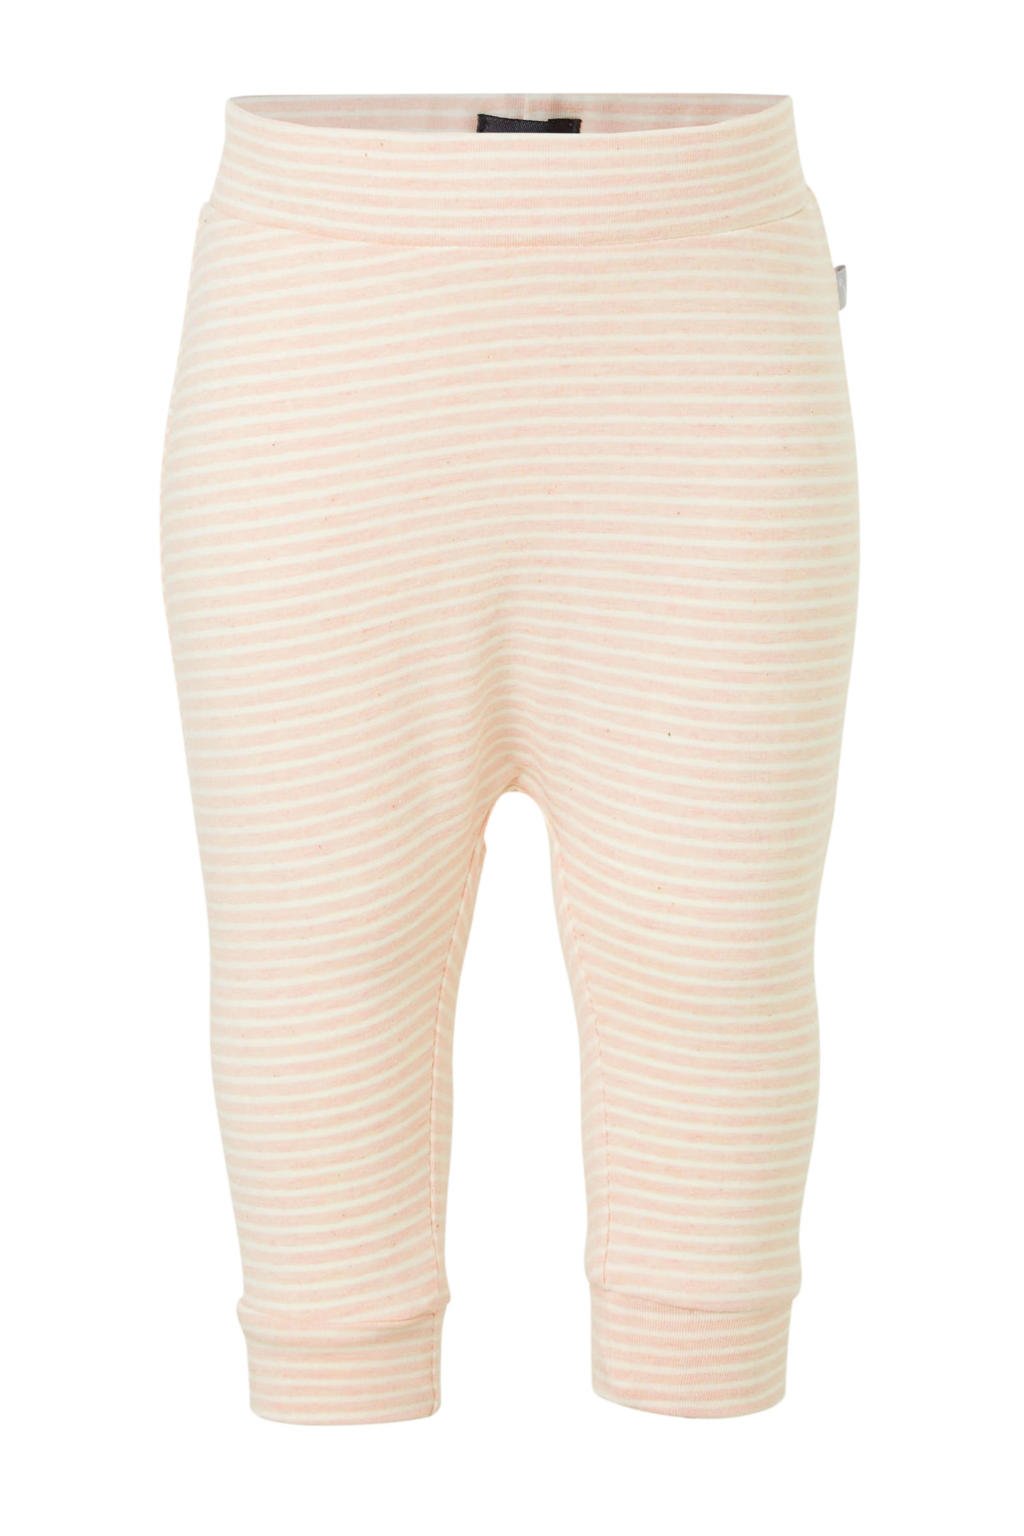 Lichtroze en witte meisjes Babyface baby gestreepte broek van stretchkatoen met elastische tailleband